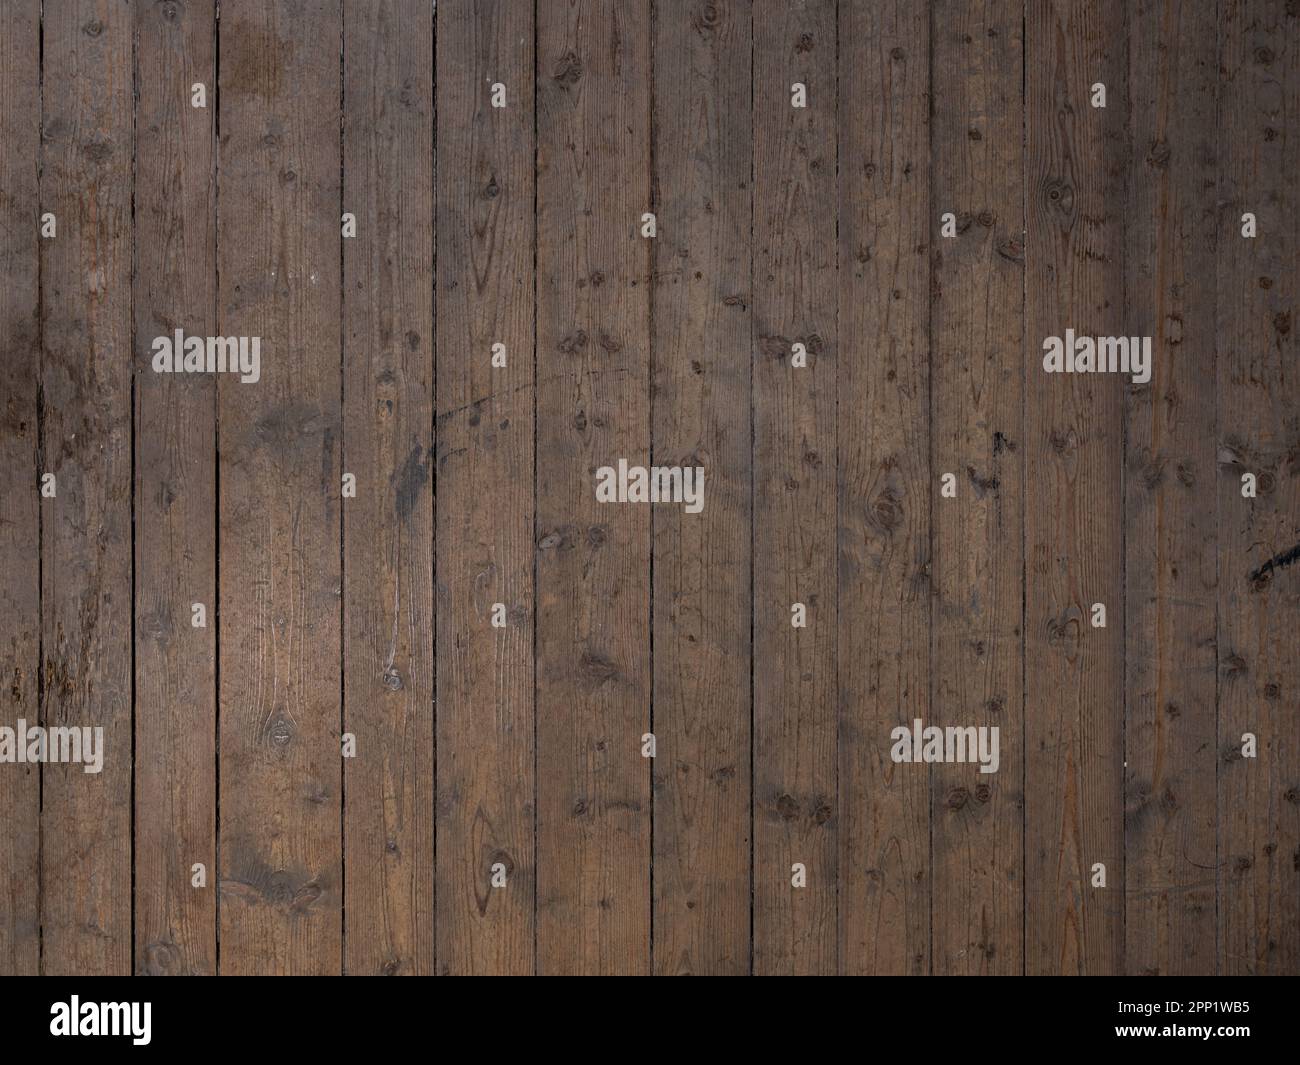 Alte Holzbodenfußböden. Verwitterte Dielen in dunkelbrauner Farbe und vertikaler Ausrichtung. Hintergrund der Holzkornstruktur. Stockfoto